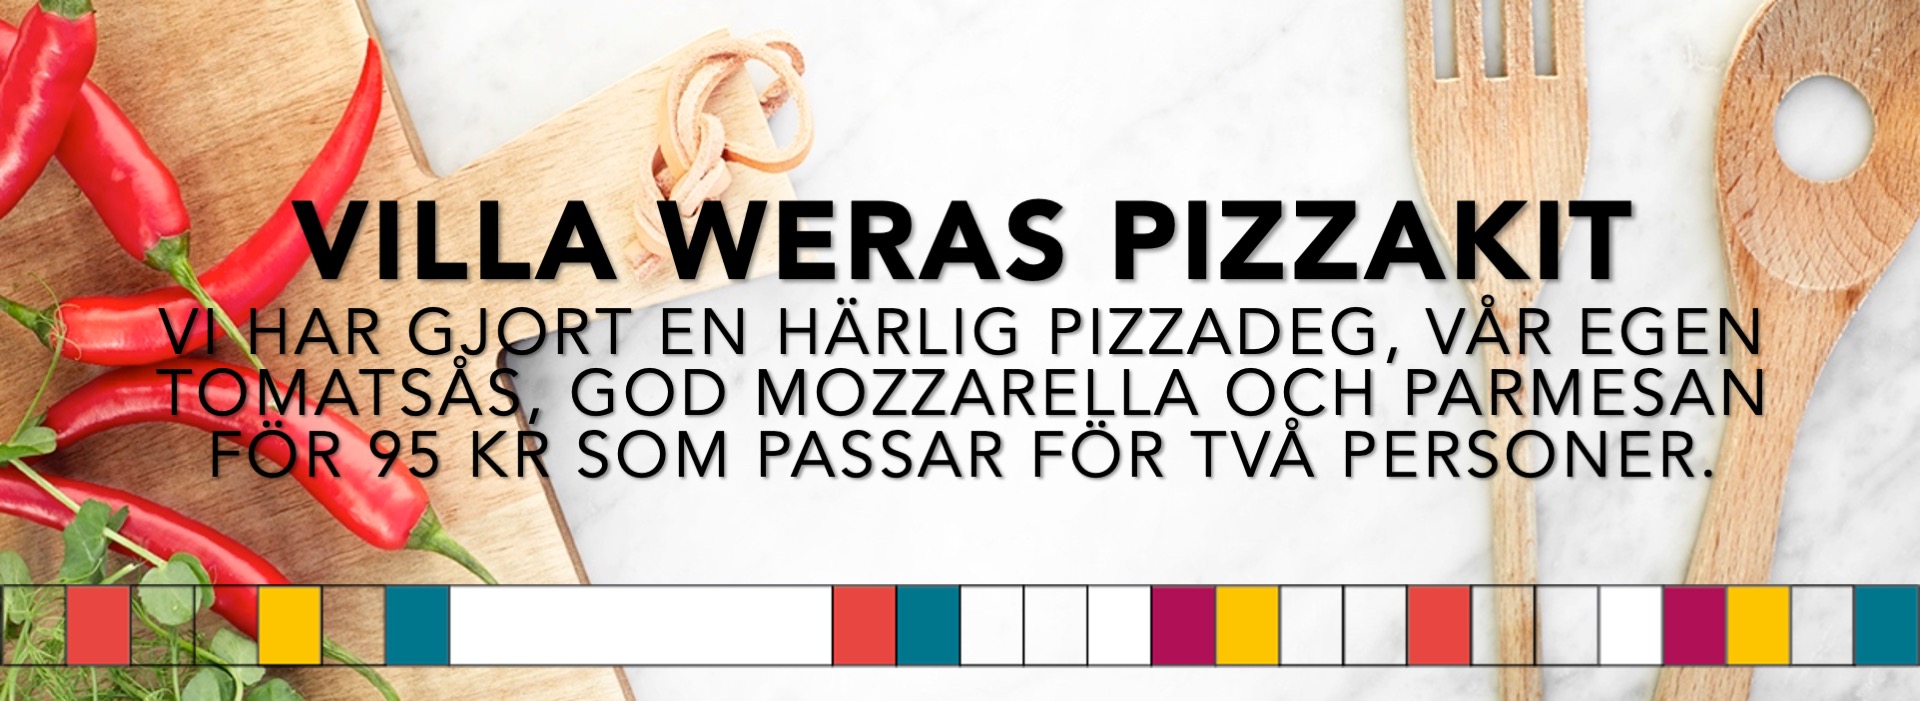 Pizzakit-